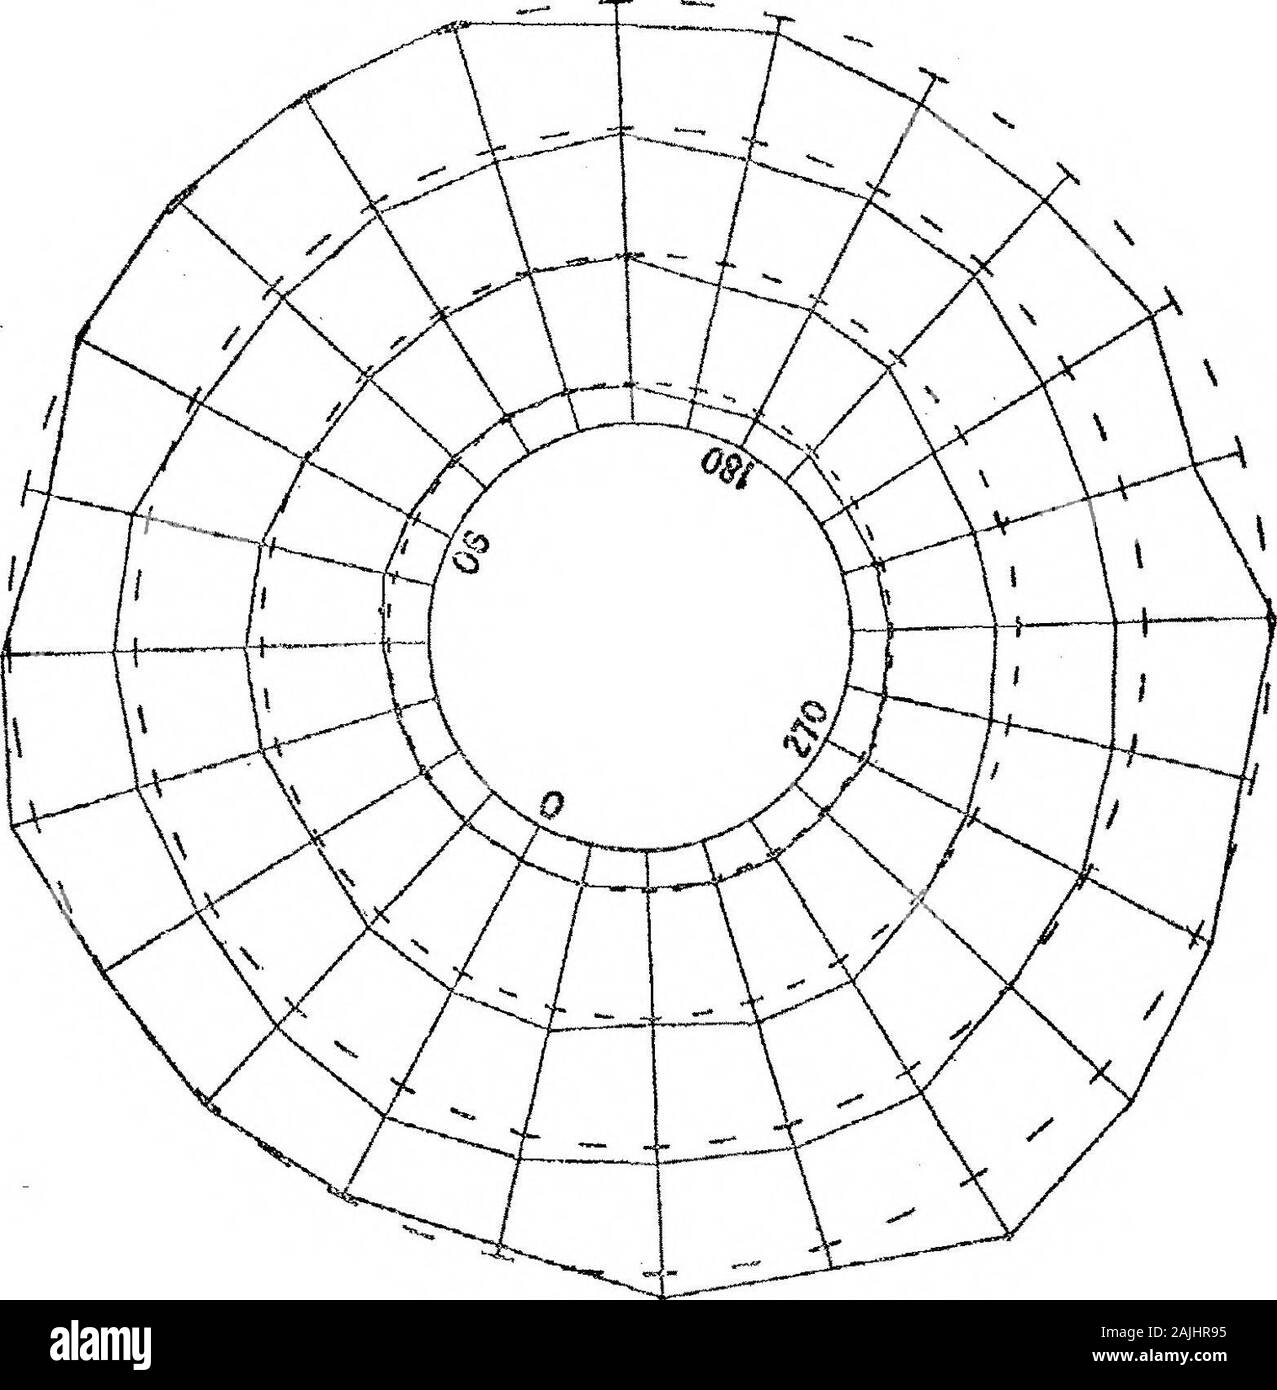 Die Verteilung der Blue-Violet Licht in der Sonnenkorona am 30. August 1905, als Abgeleitet von Fotos bei Kalaa genommen-es-Senam, Tunesien. Abb. 4. Abb. 5. die Entfernungen, die zu einer gleichen - Intensität (oder schwarze) Kurve wurden kombiniert um amean; die Unterschiede, hh 9 (Mittelwert minus Abstand) definieren Sie die gleiche Intensität (oder schwarze) Kurve mit Bezug auf das Rundschreiben, Kurve. Schließlich aus den beobachteten 95 Kurven, in regelmäßigen Abständen von der mittlere Abstand wereinterpolated Kurven, einen Auszug der Ergebnisse ist in Tabelle 1 (s. 337), und Graphen einiger thecurves sind in Abb. 5 dargestellt. Stockfoto